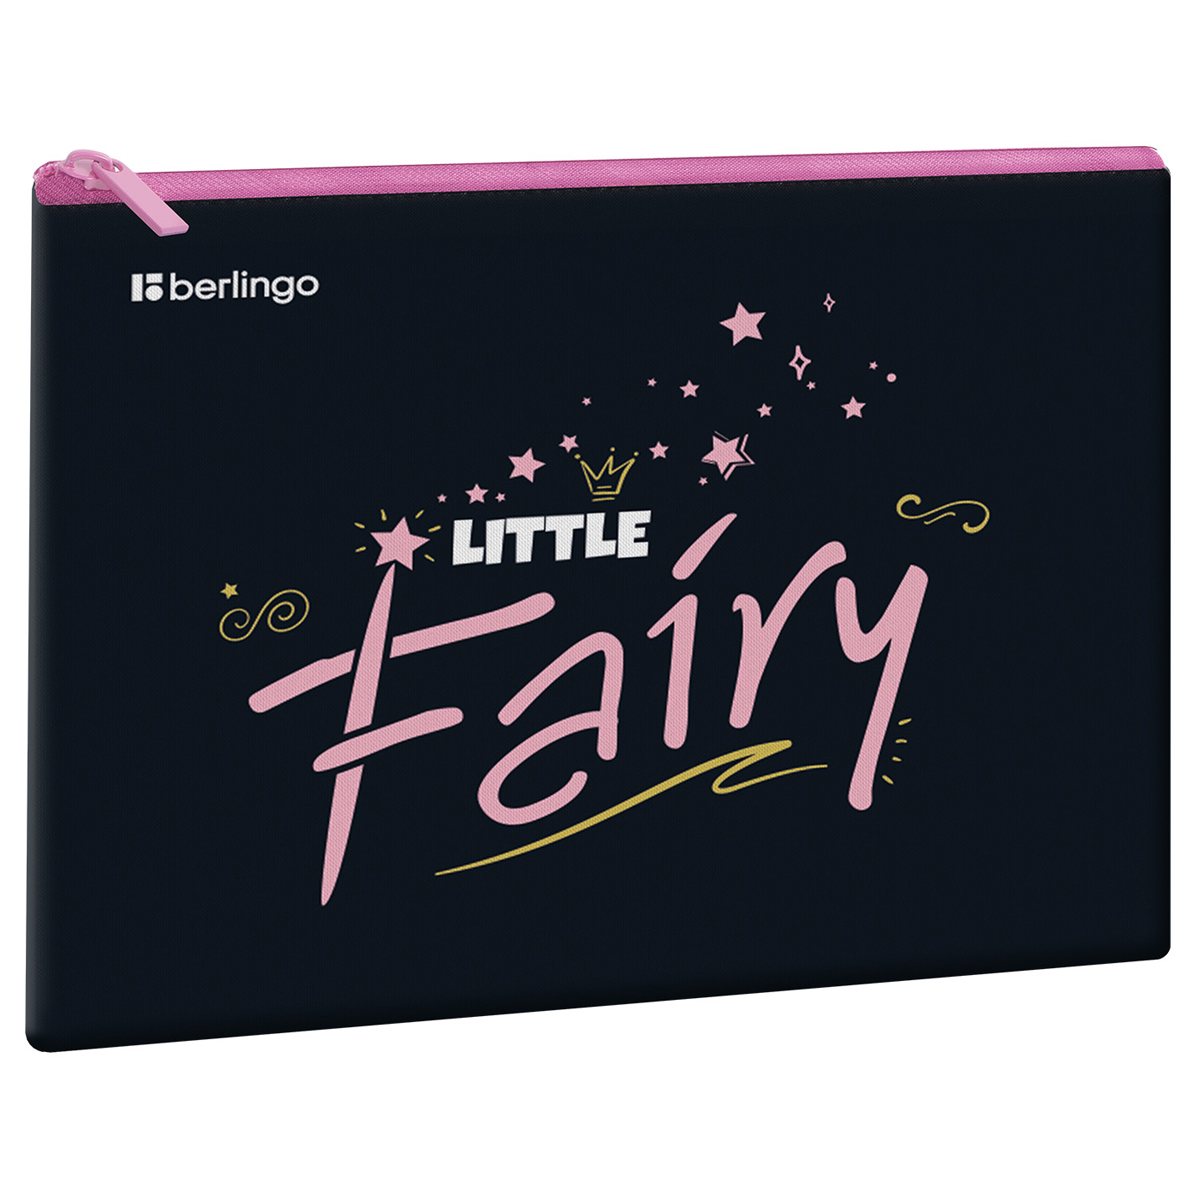  1 , 5 Berlingo "Little fairy", 255*205, ,  